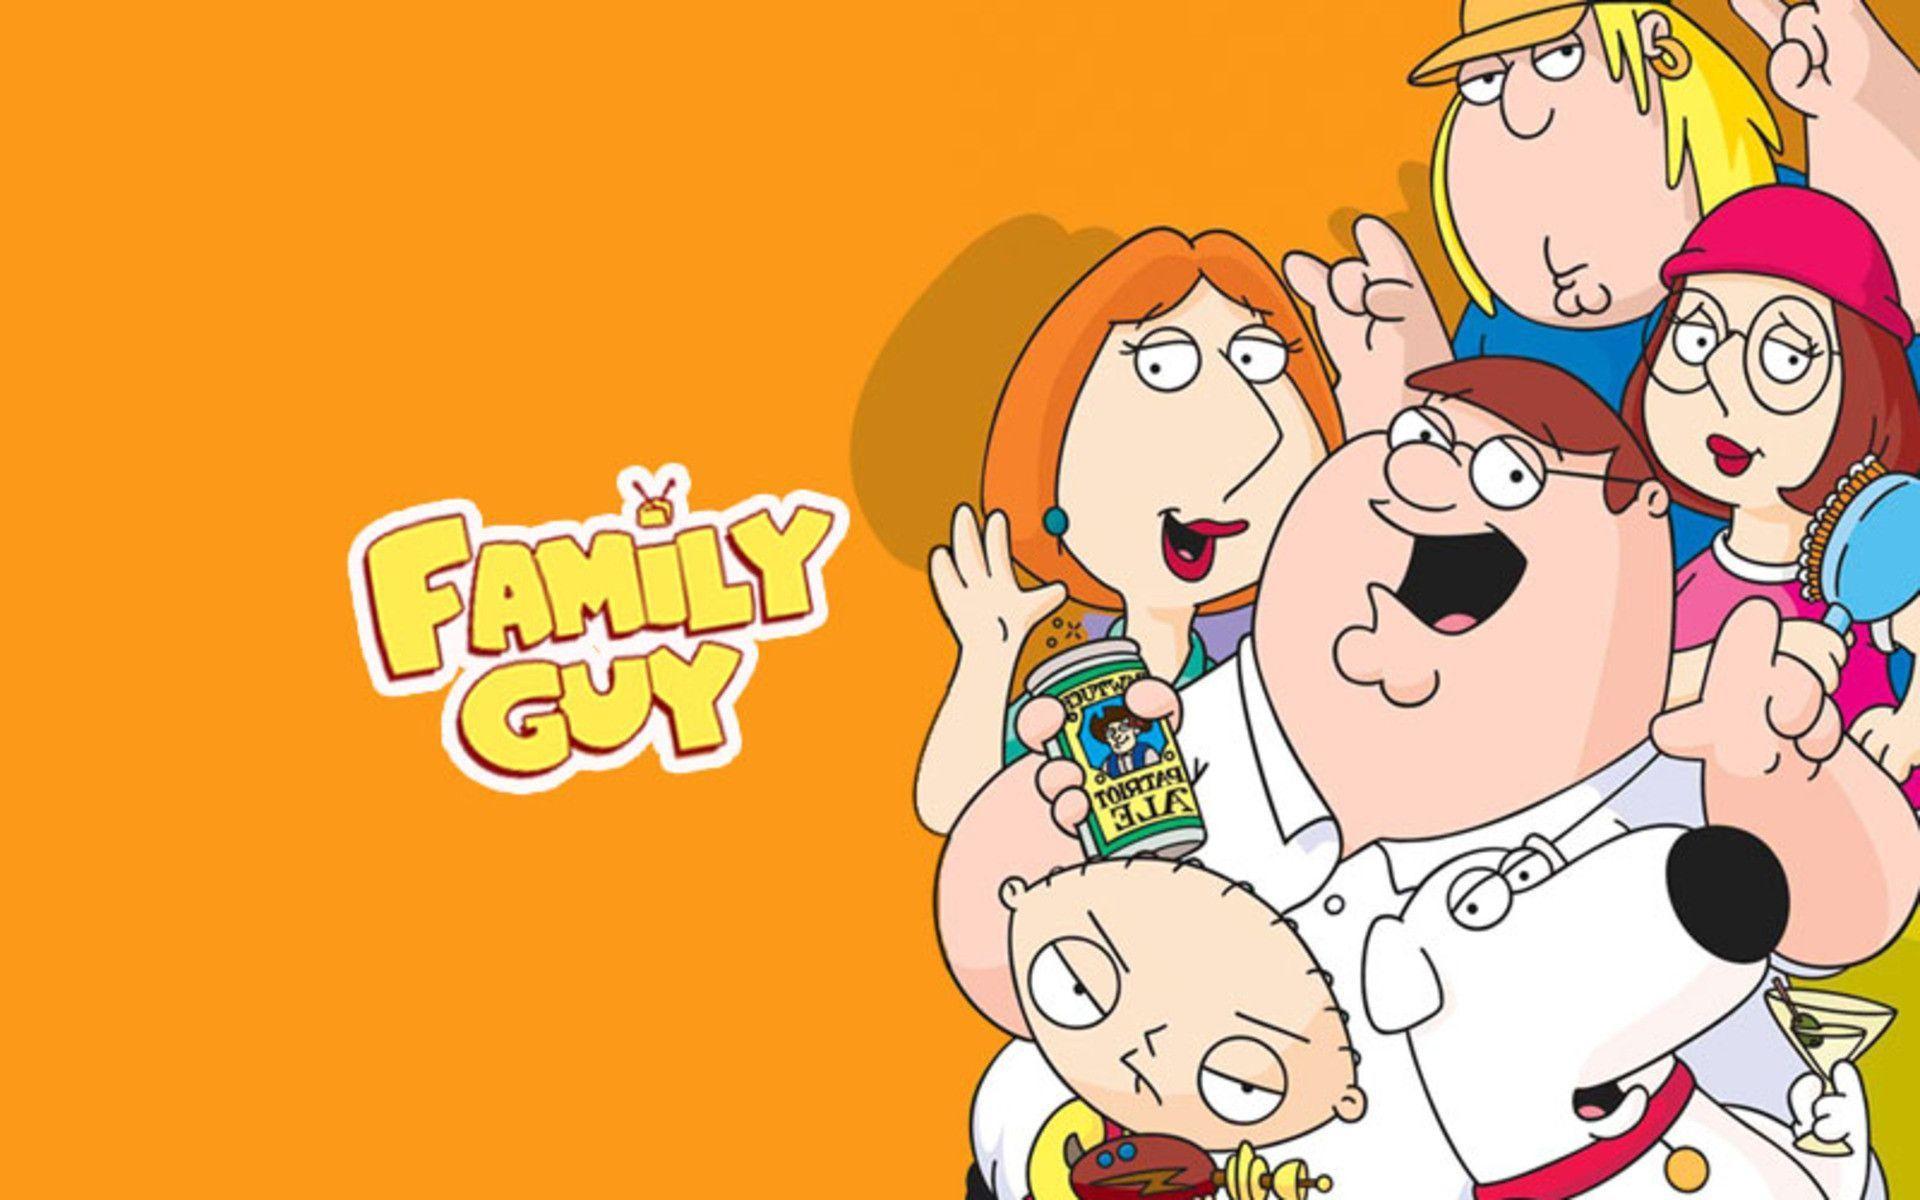 Funny Family Guy Wallpaper